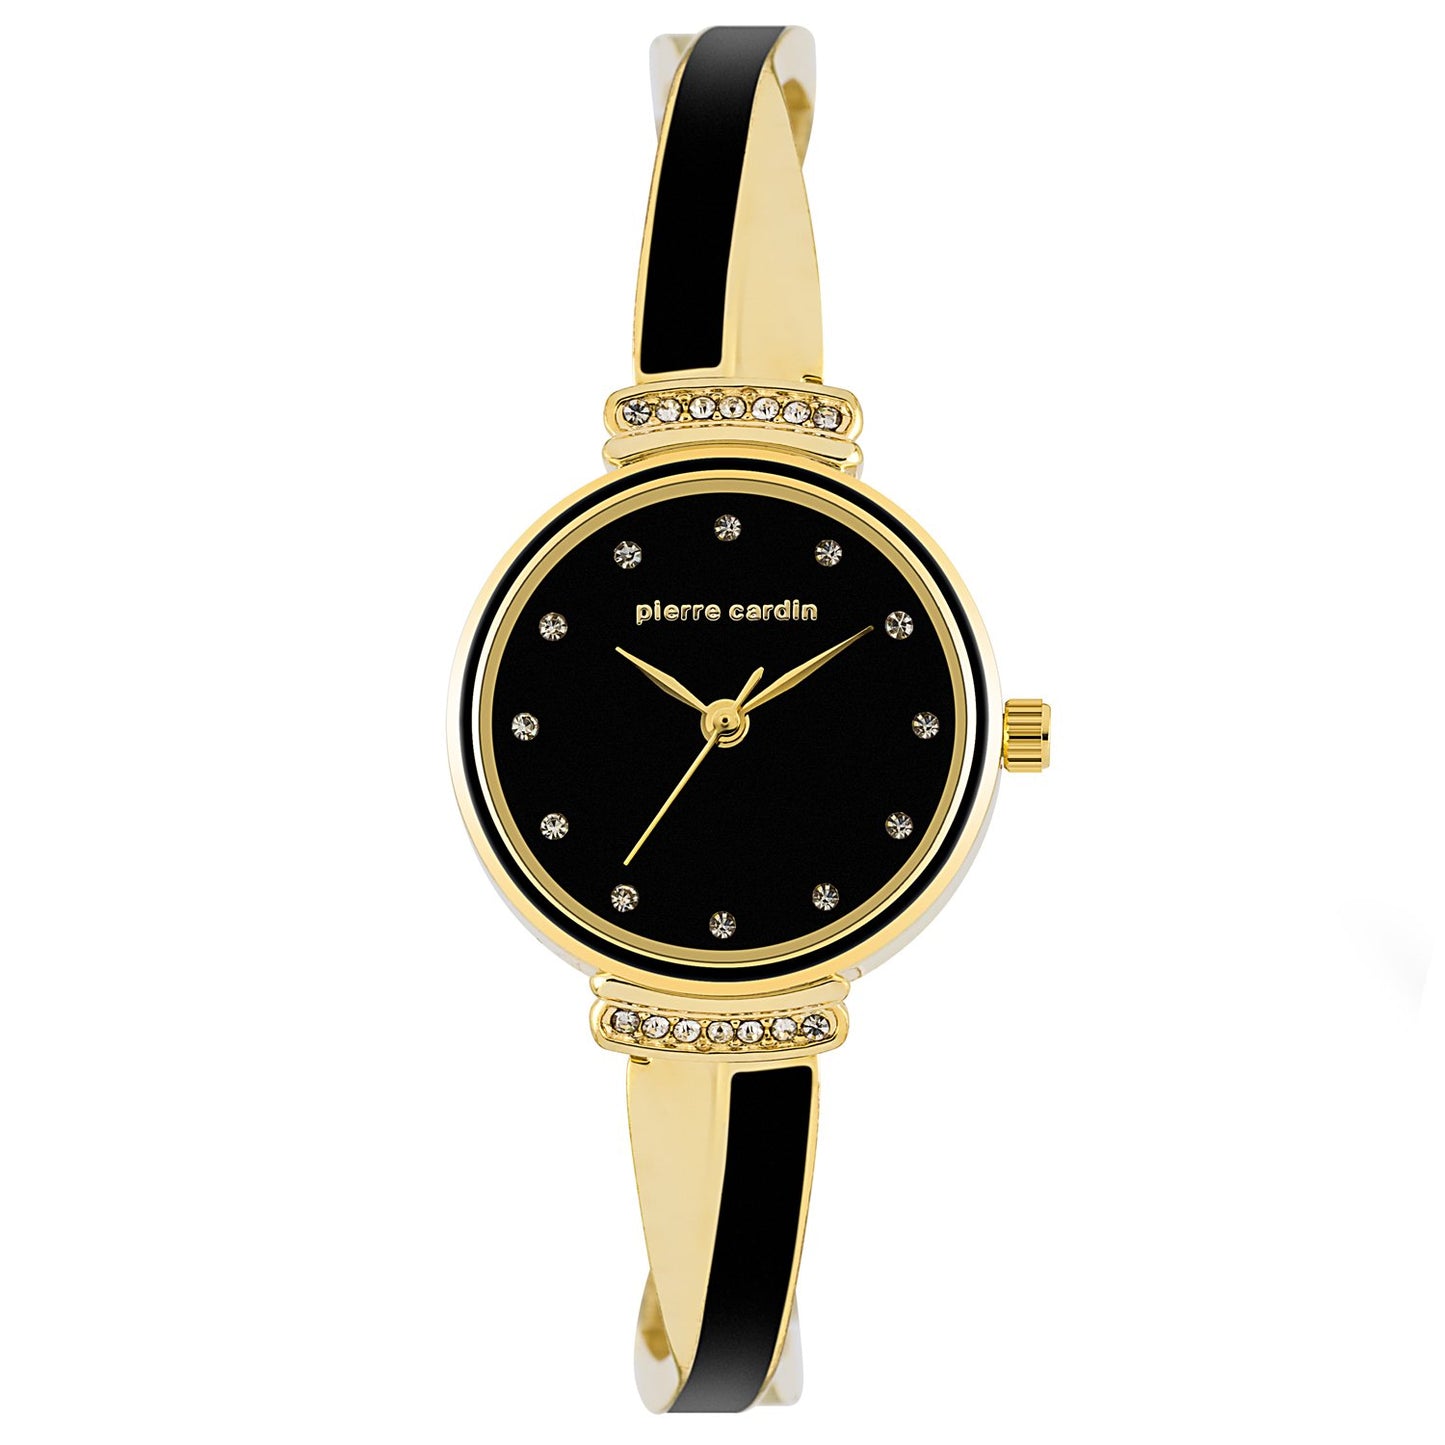 4-częściowy zestaw Pierre Cardin (zegarek, 2 pary kolczyków, naszyjnik)